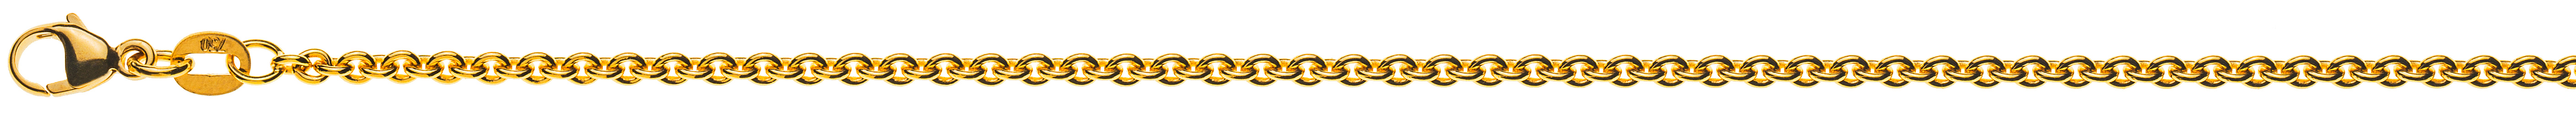 AURONOS Prestige Halskette Gelbgold 18K Rundanker 38cm 2.3mm